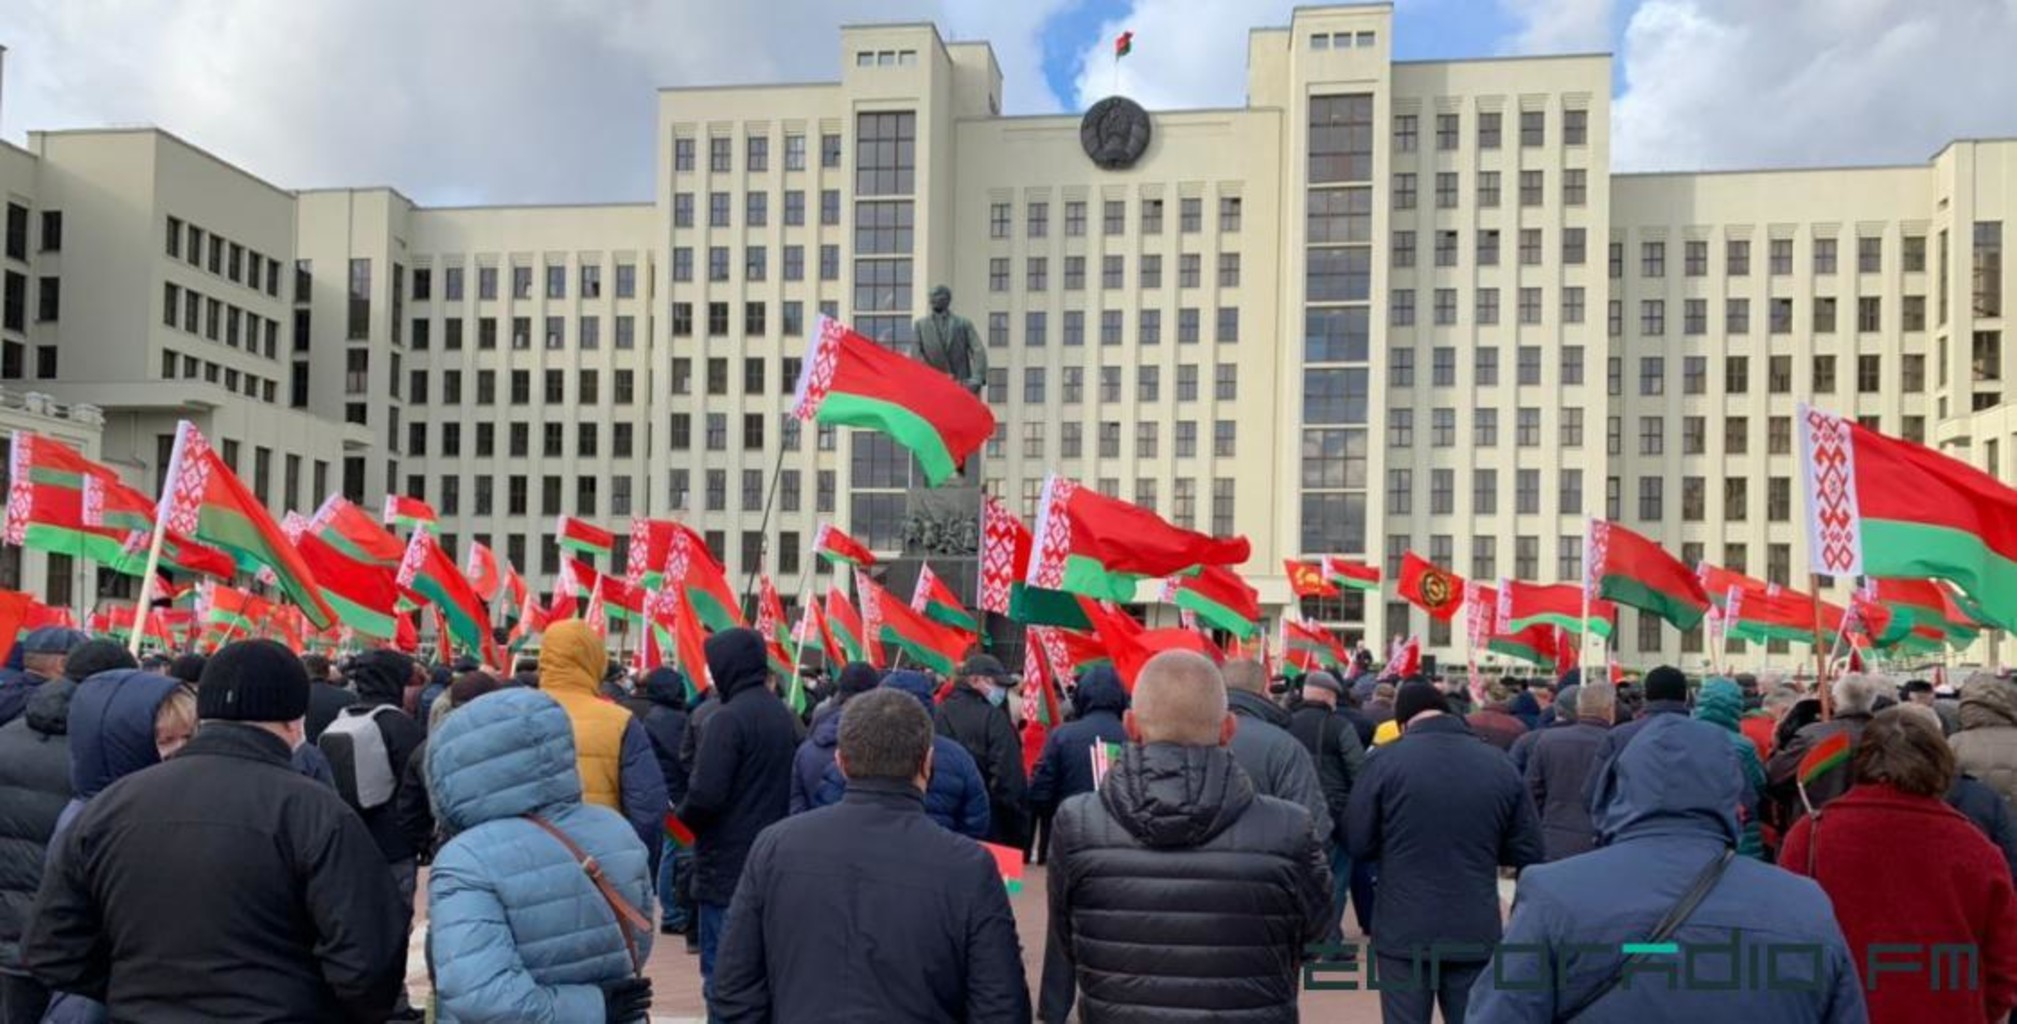 Митинг в поддержку Лукашенко. Лукашенко на митинге. Митинг в поддержку Лукашенко вид сверху 2021 на мосту. Лукашенко митинг на заводе фото. Собрать митинг